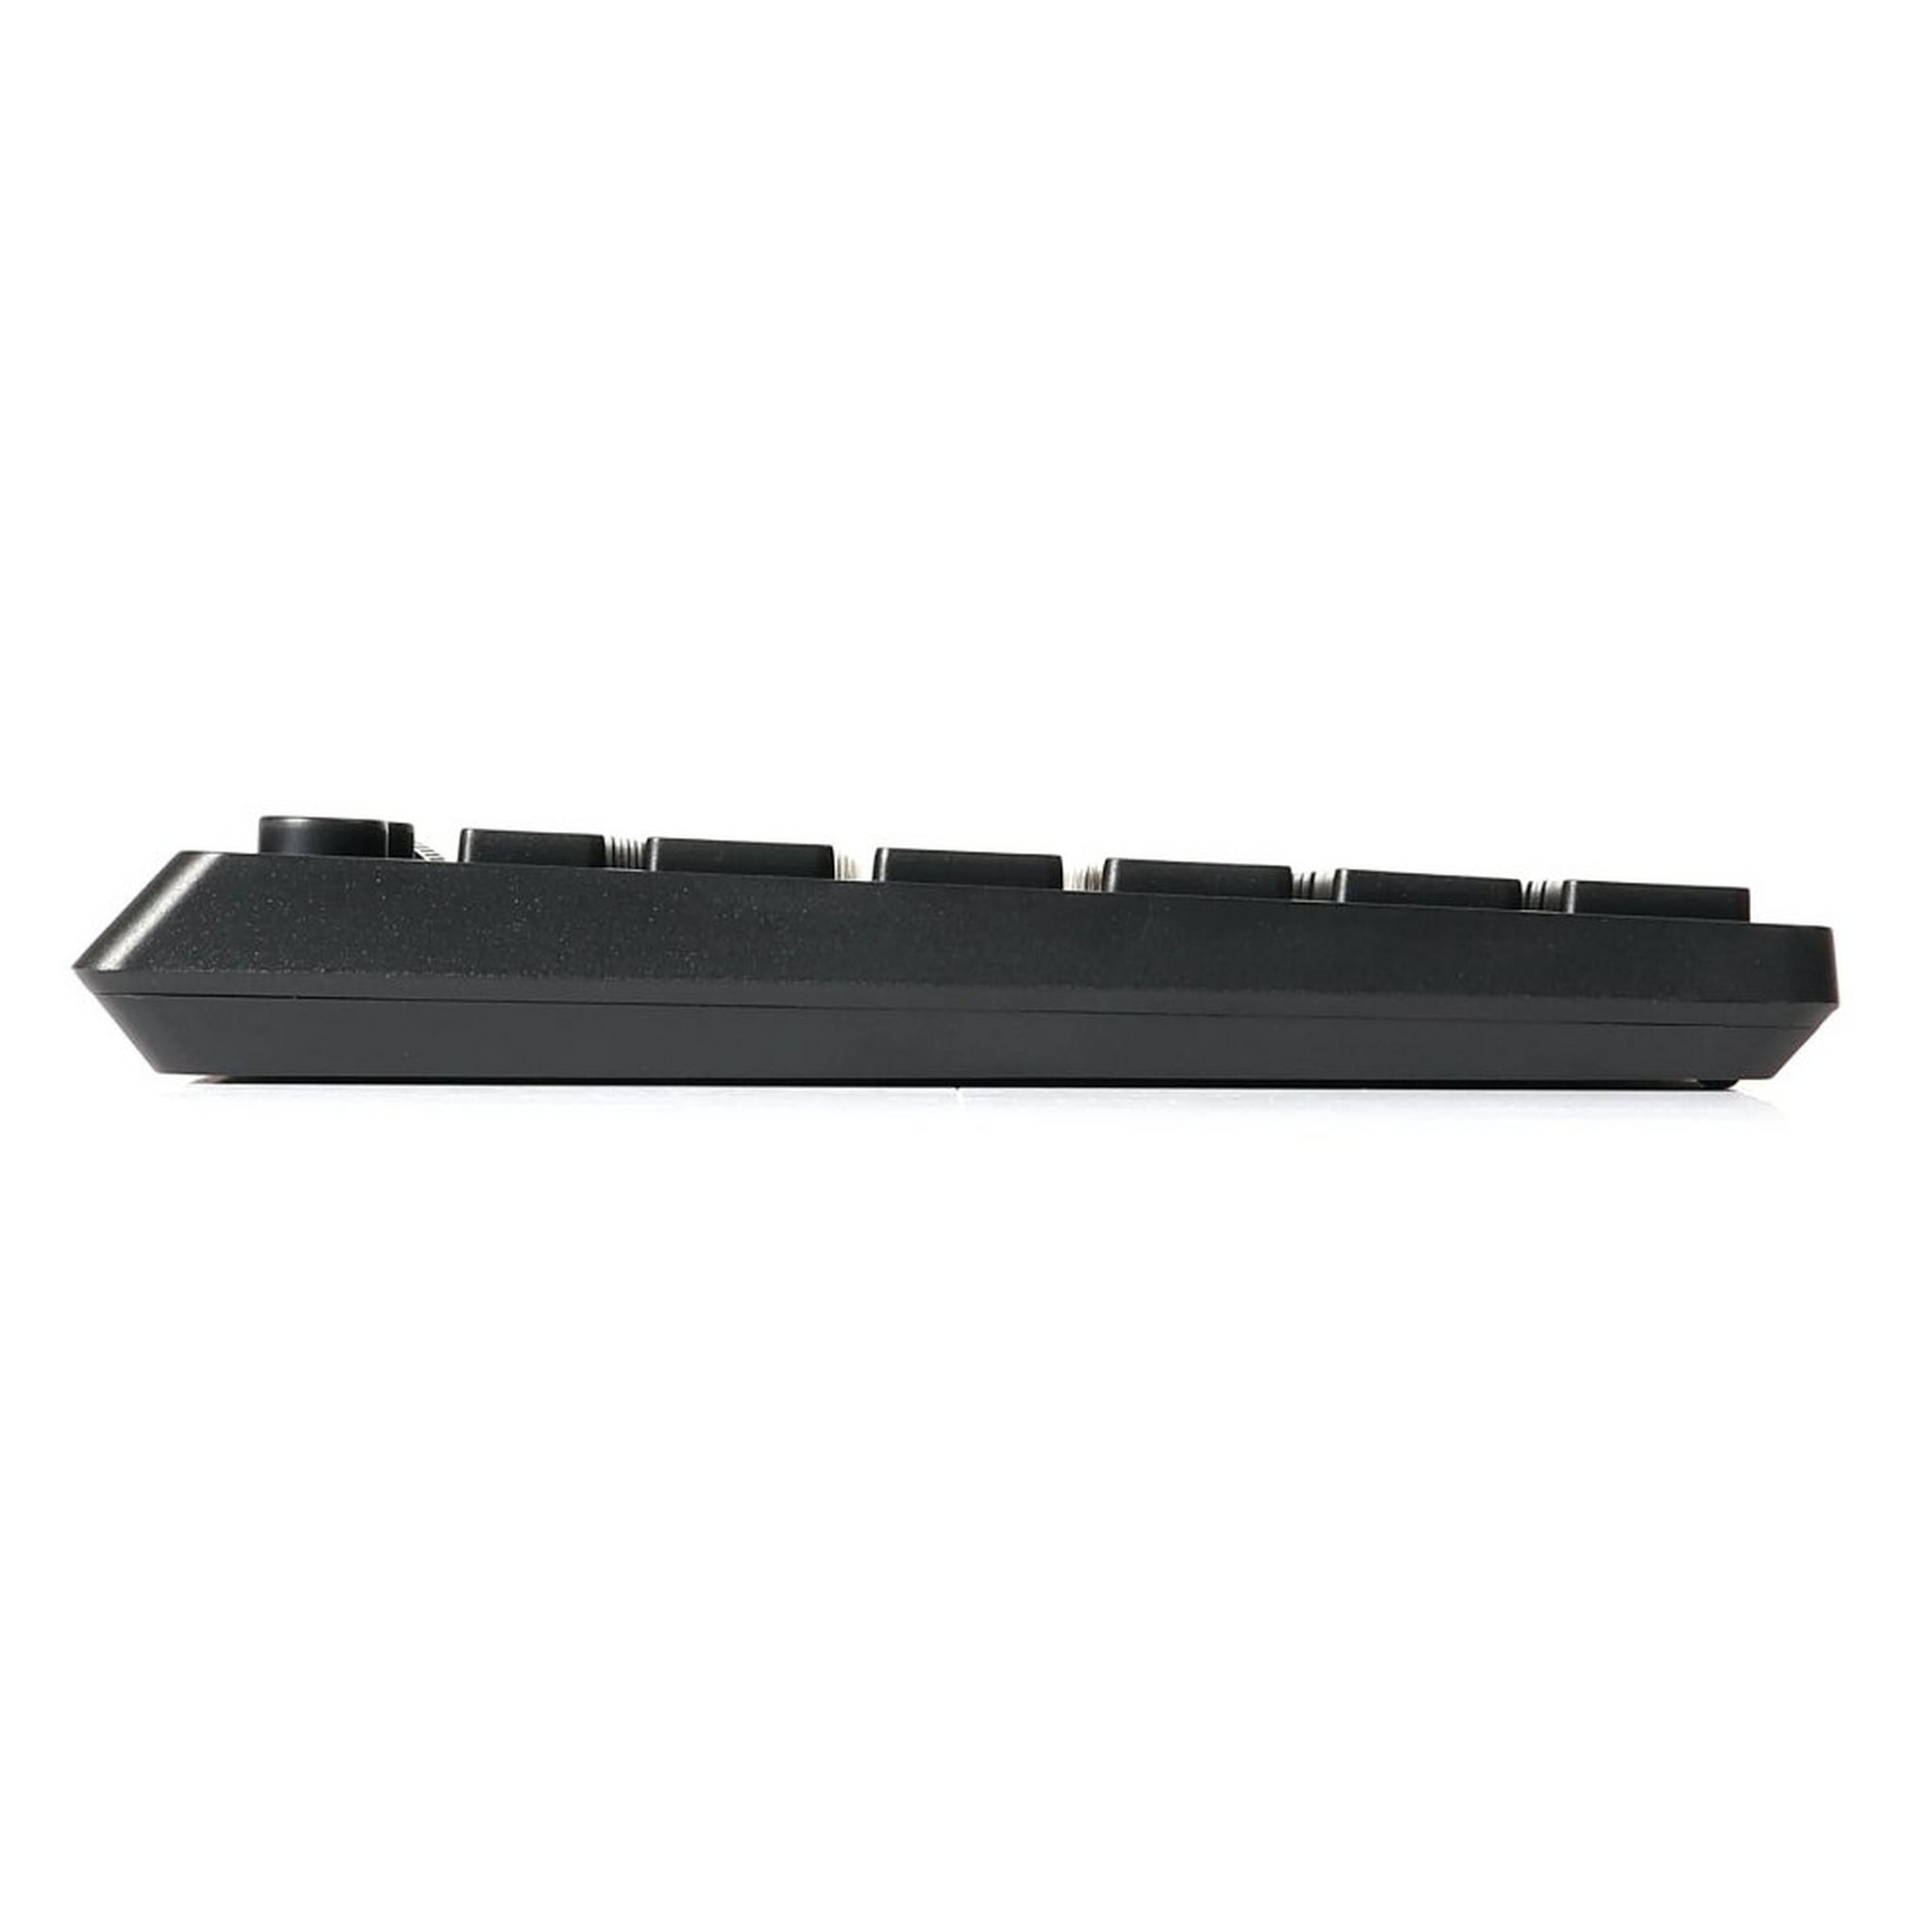 لوحة مفاتيح رابوو كي2800 مزودة بلوحة لمس لاسلكية أسود (إنجليزي / عربي)